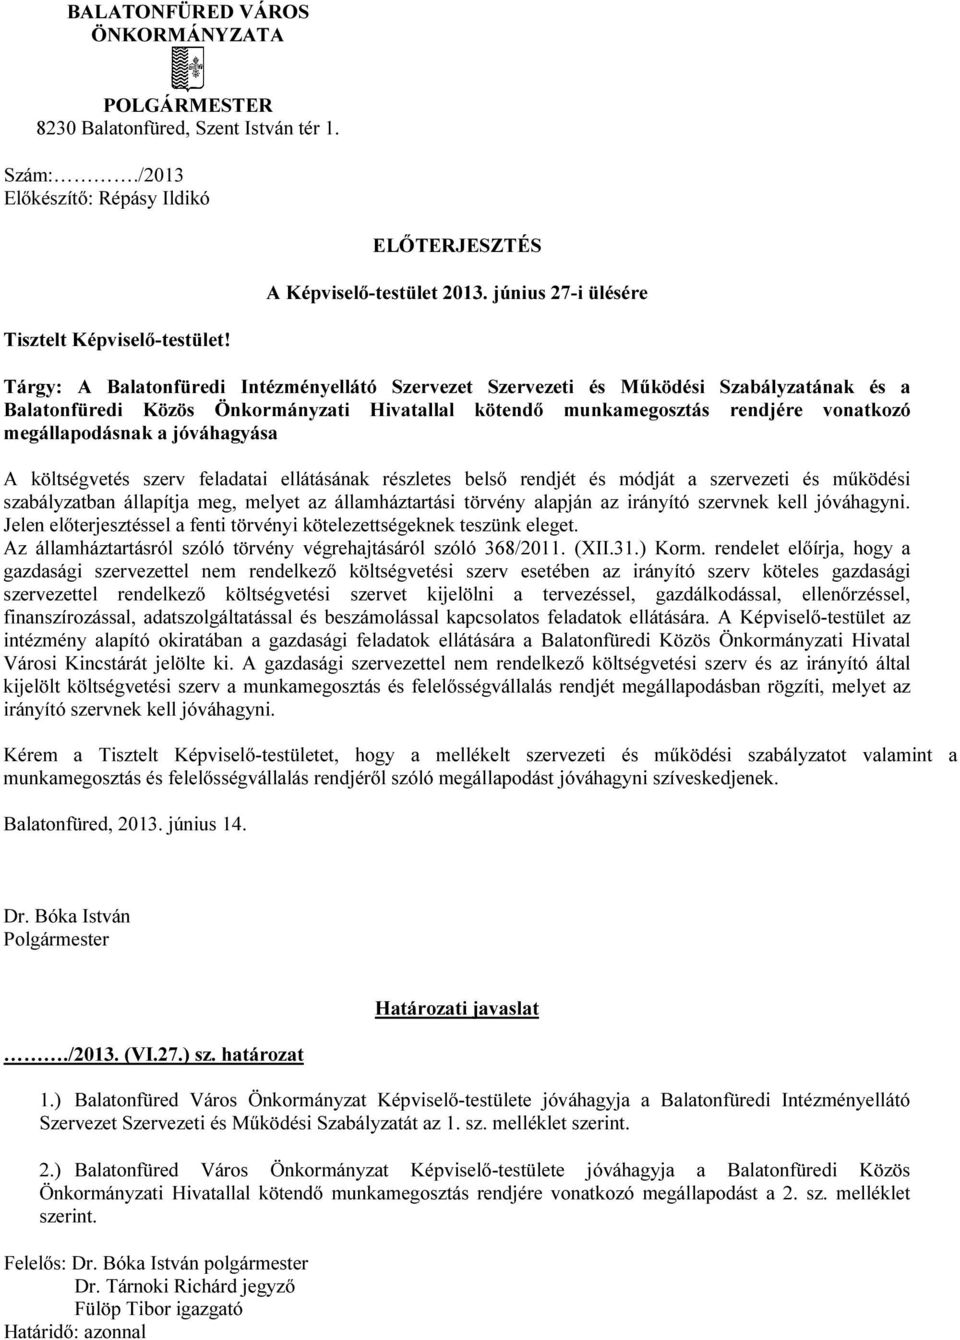 Tárgy: A Balatonfüredi Intézményellátó Szervezet Szervezeti és Működési Szabályzatának és a Balatonfüredi Közös Önkormányzati Hivatallal kötendő munkamegosztás rendjére vonatkozó megállapodásnak a